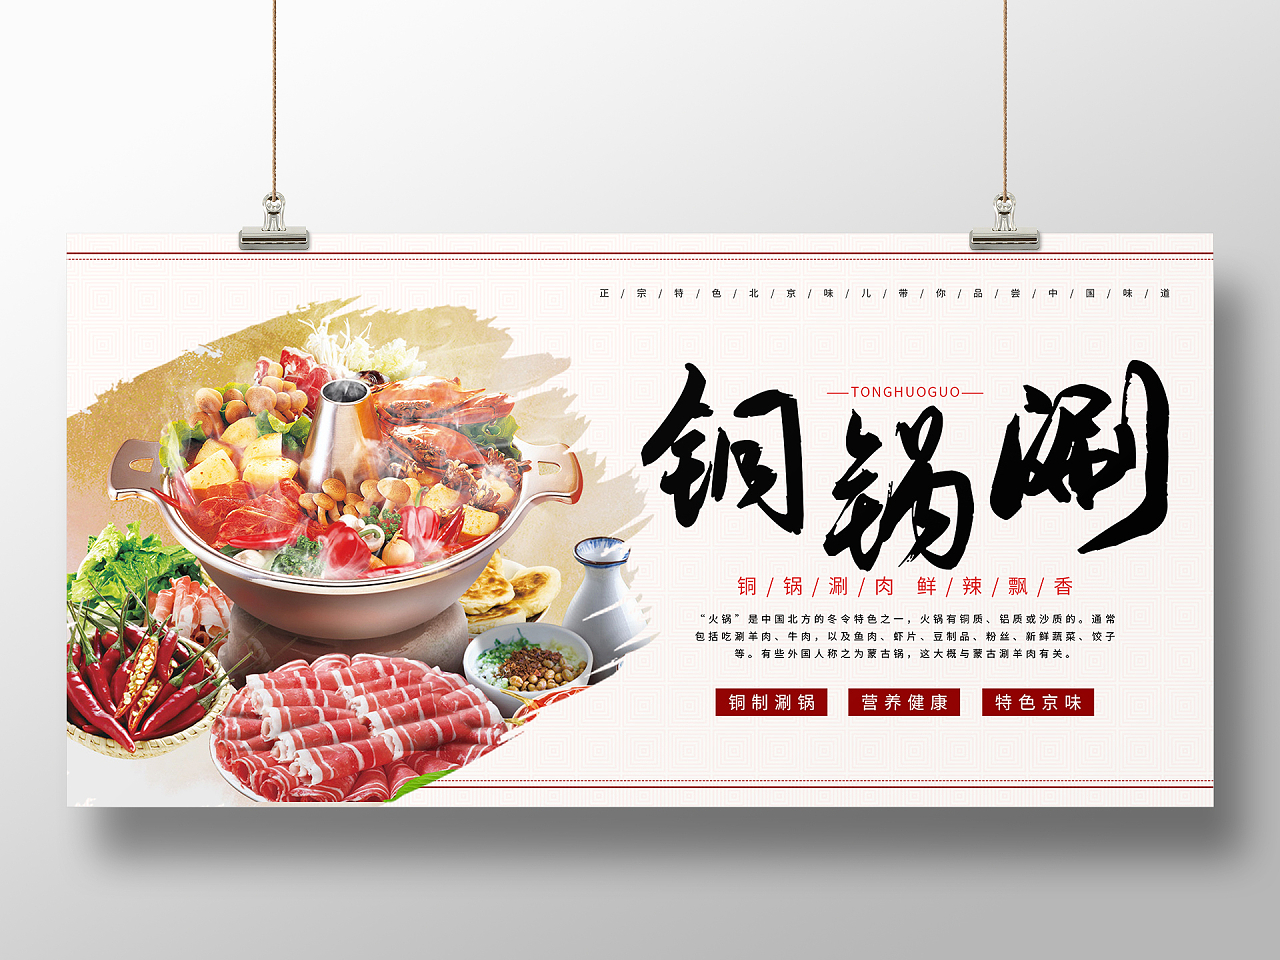 简约大气复古中国风铜锅涮老北京火锅展板海报设计